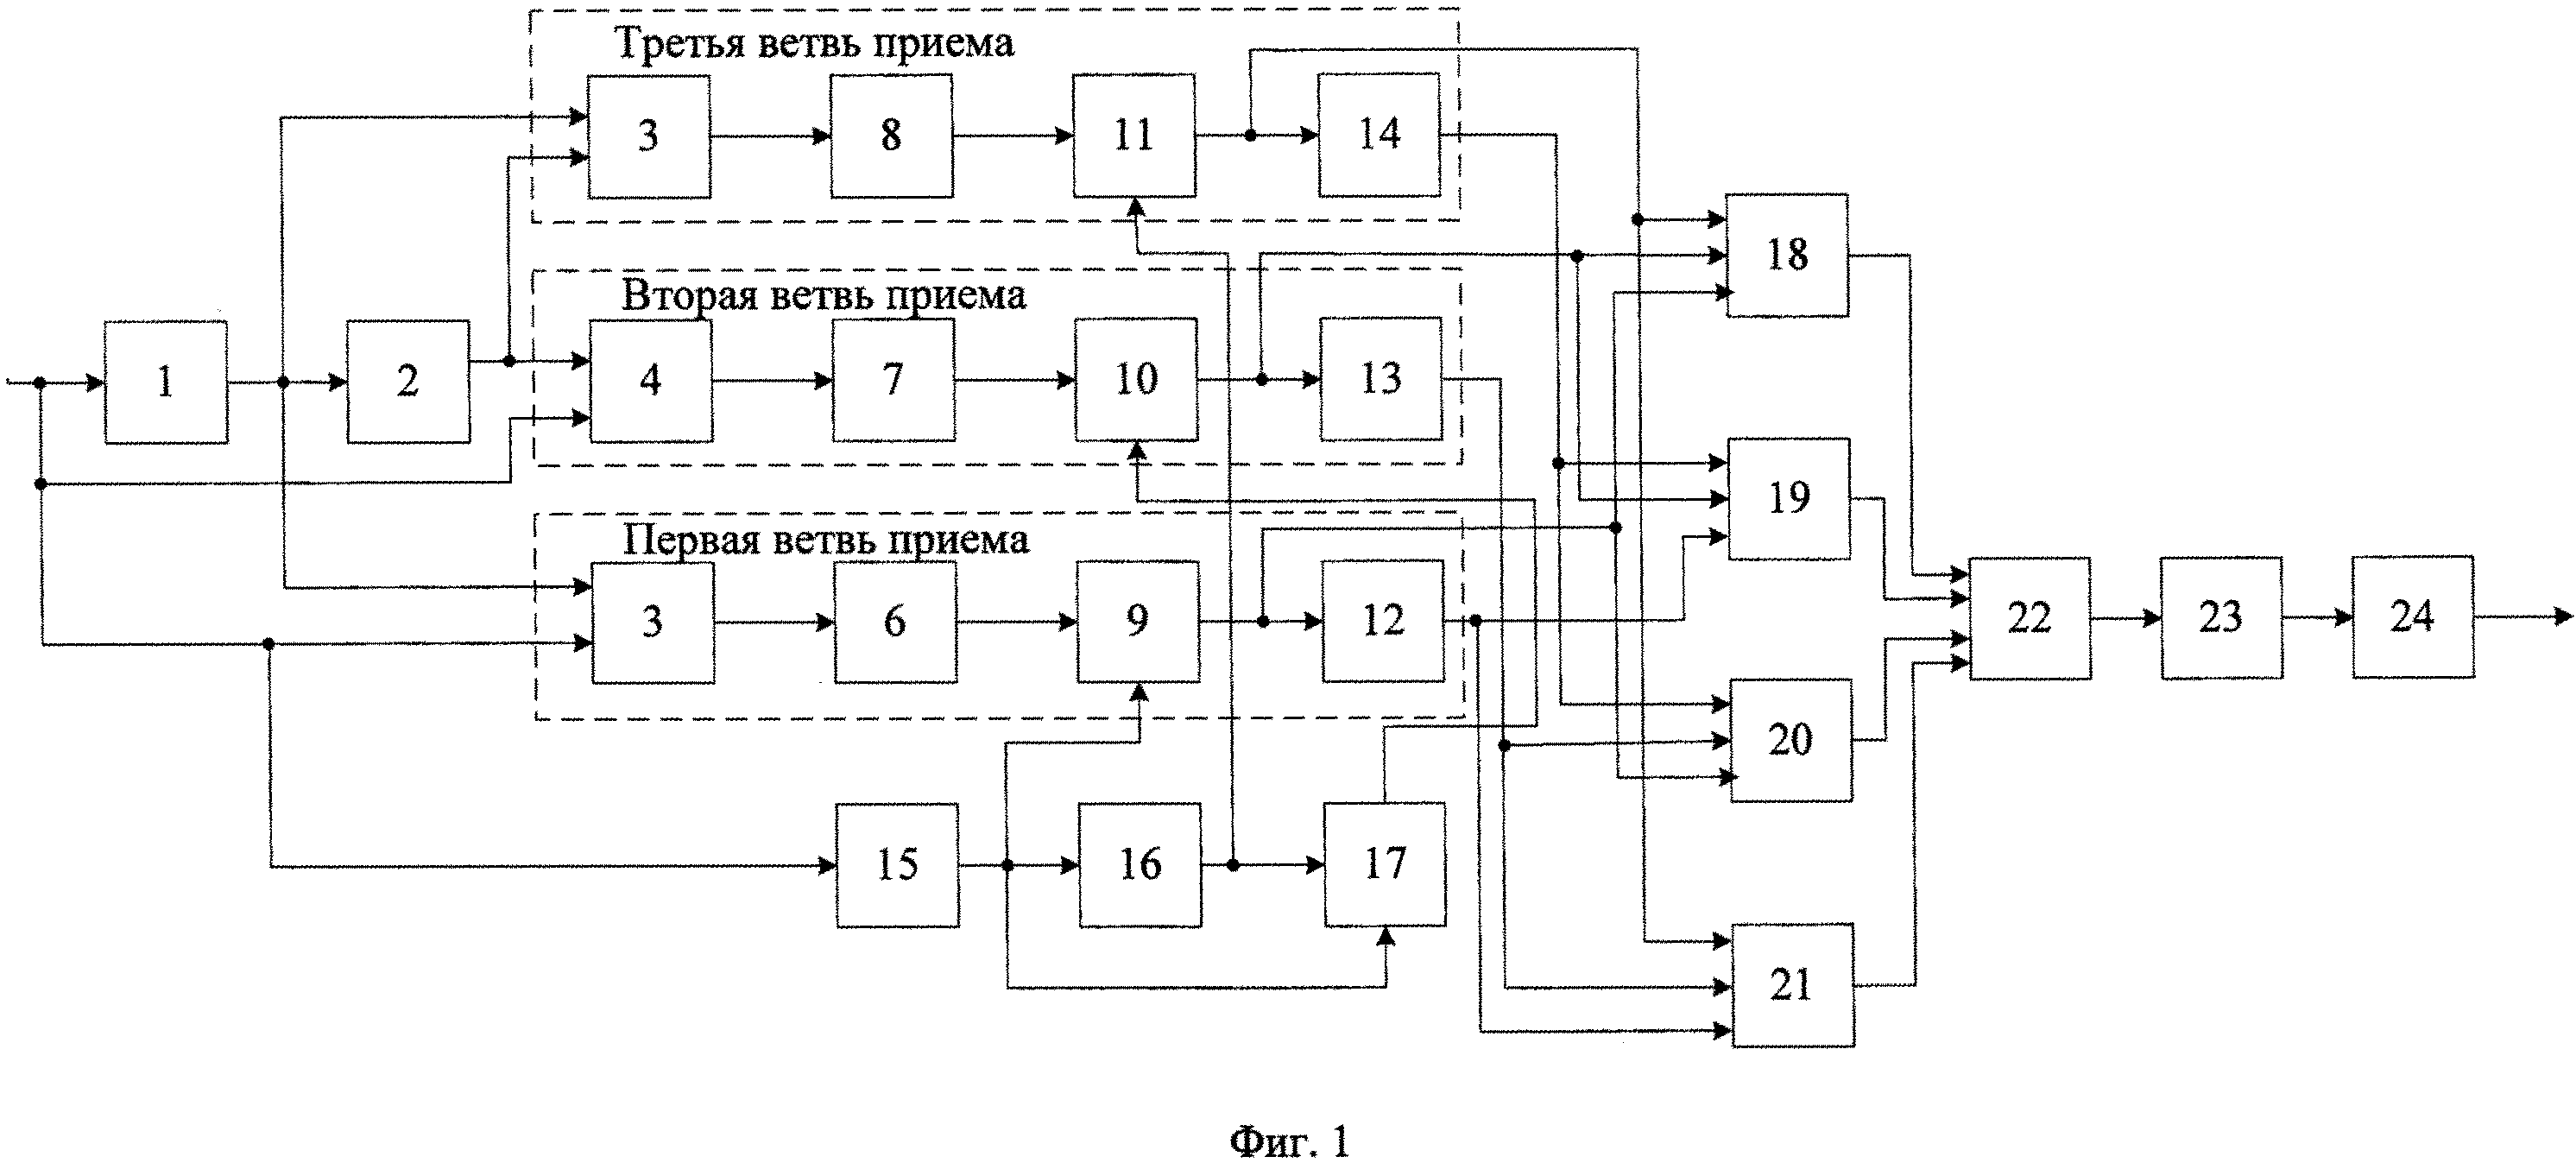 Автокорреляционный демодулятор псевдослучайных сигналов с относительной фазовой модуляцией